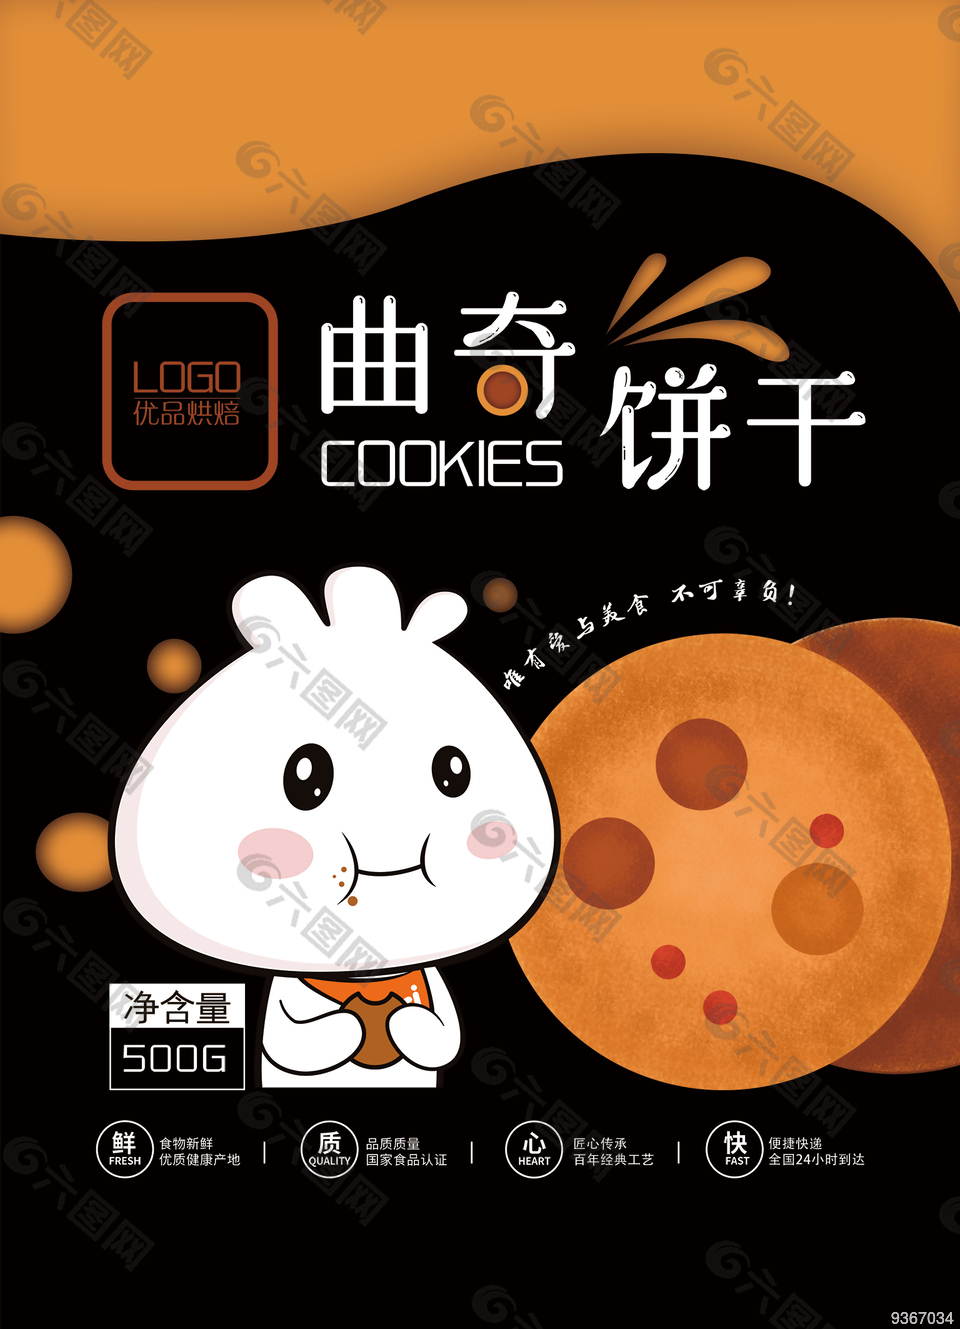 曲奇饼干包装设计平面广告素材免费下载(图片编号:9367034)